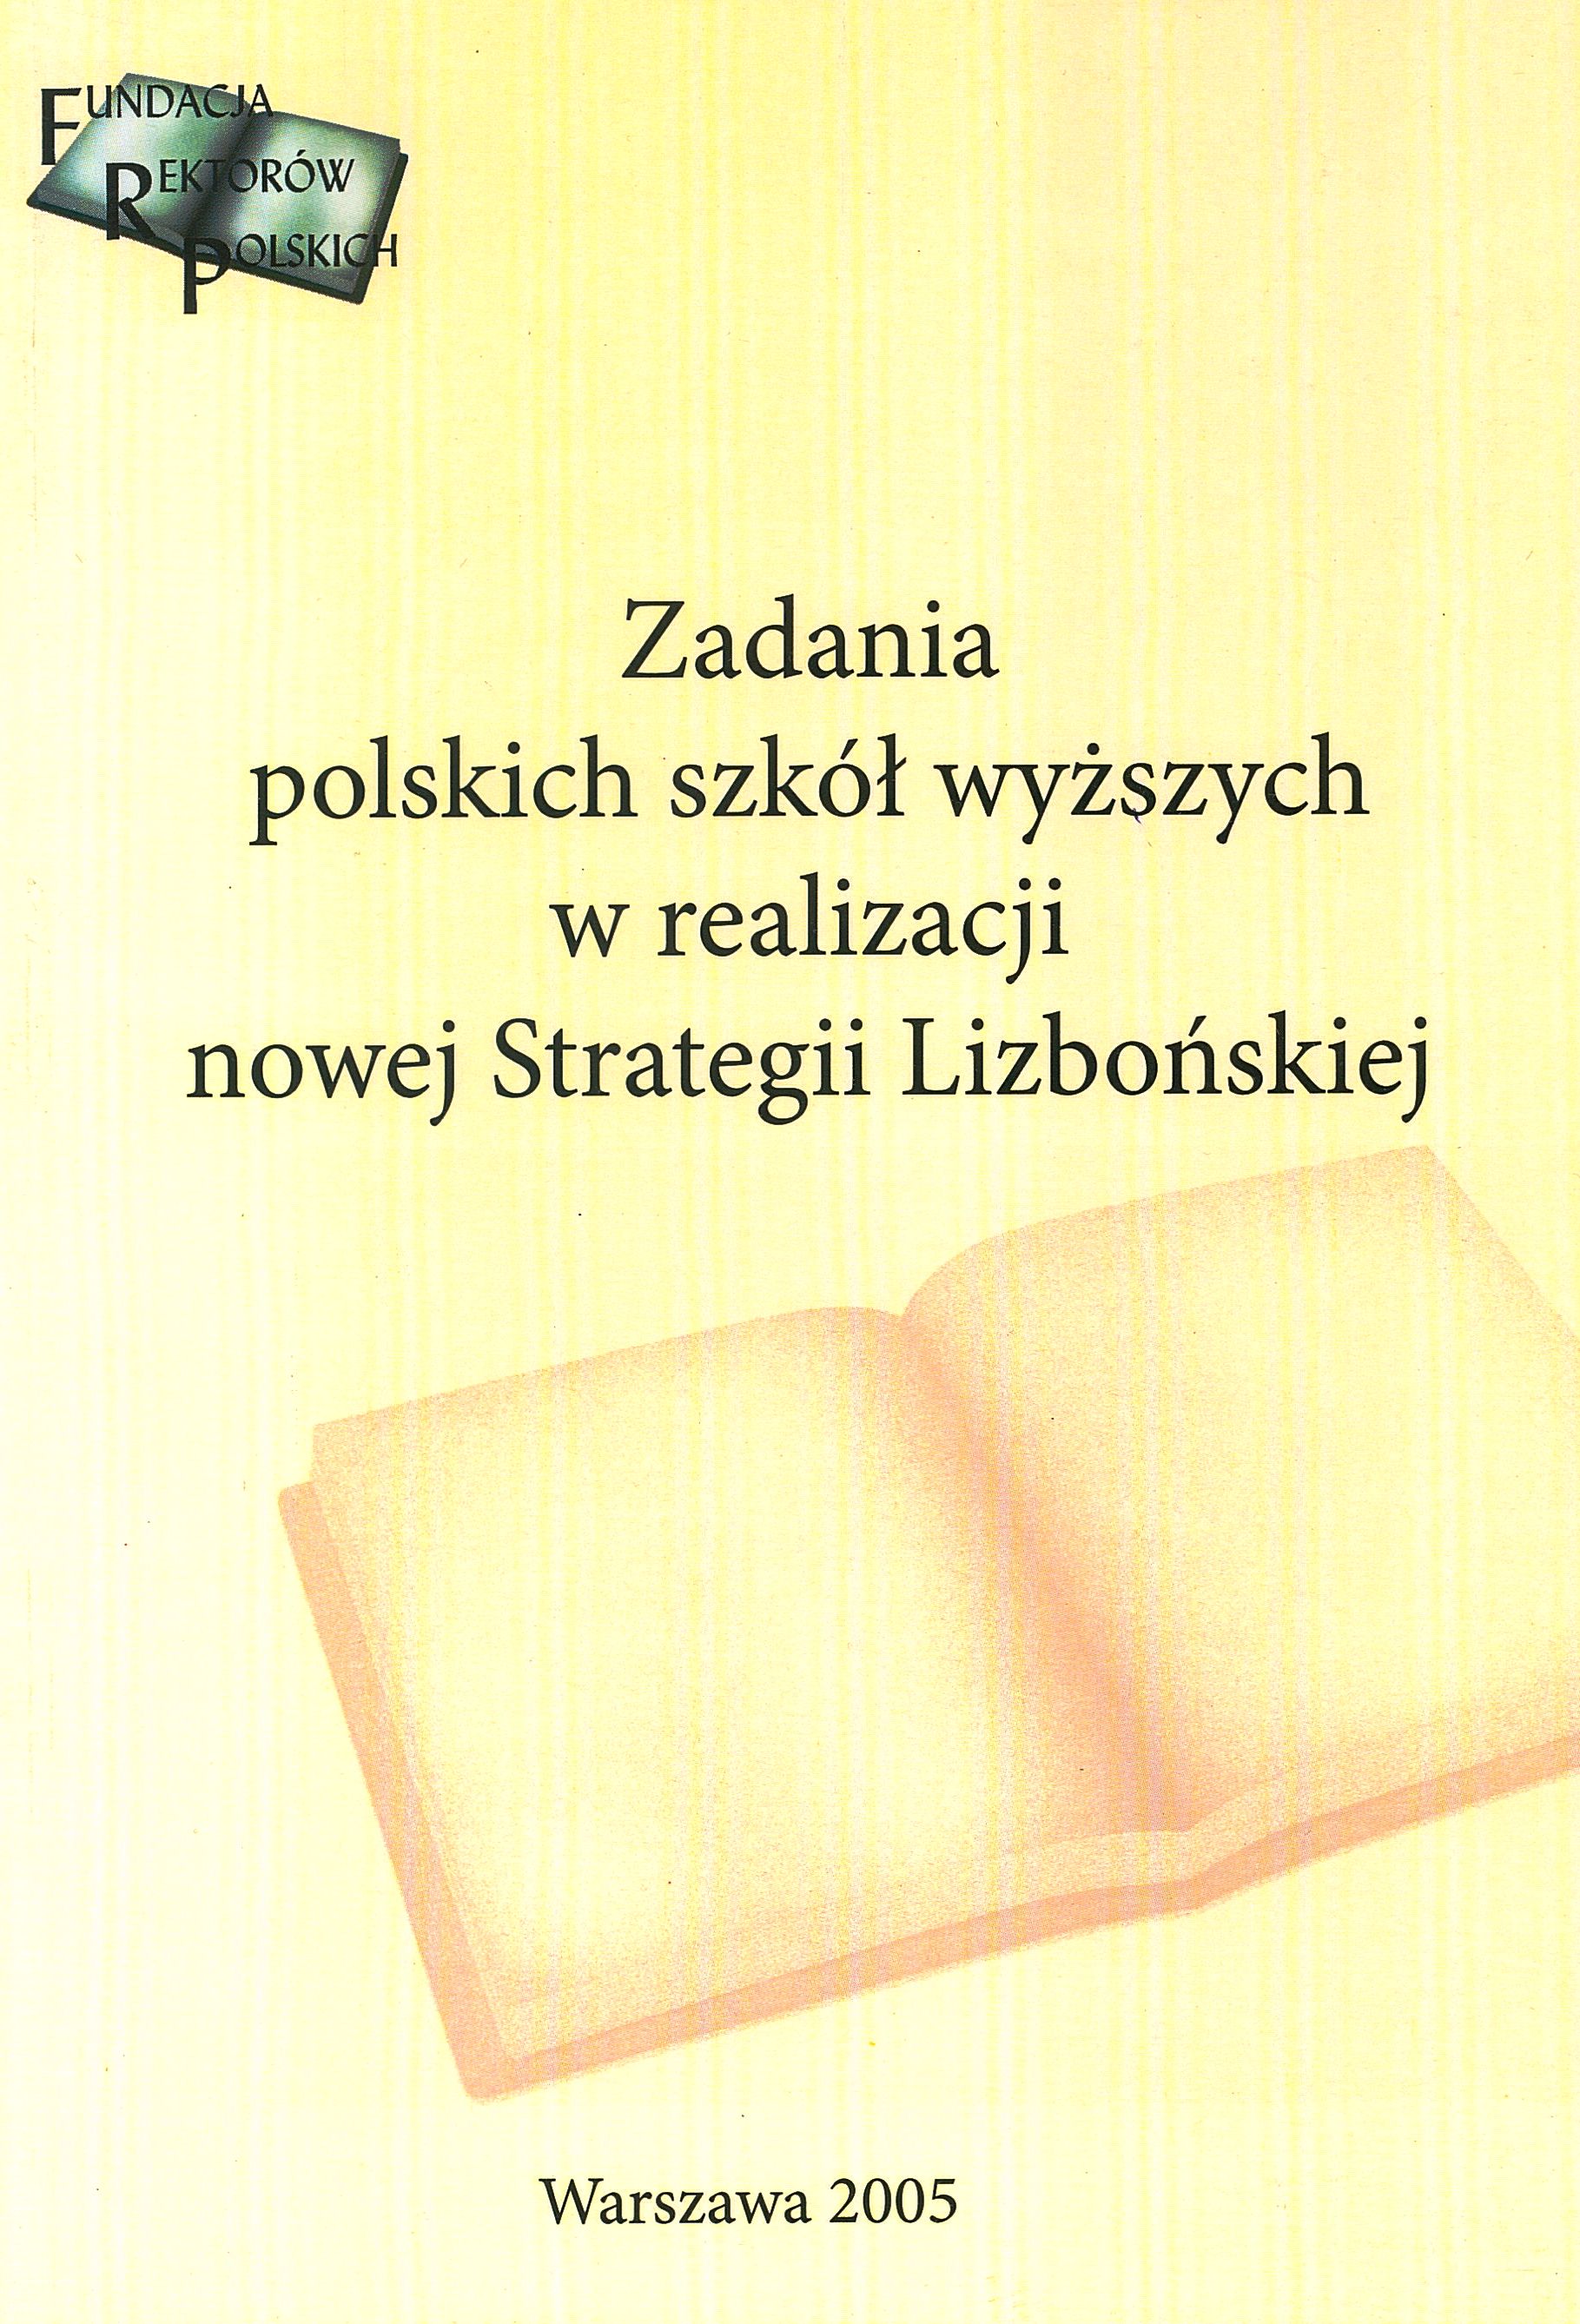 Zadania polskich szkół wyższych w realizacji nowej Strategii Lizbońskiej